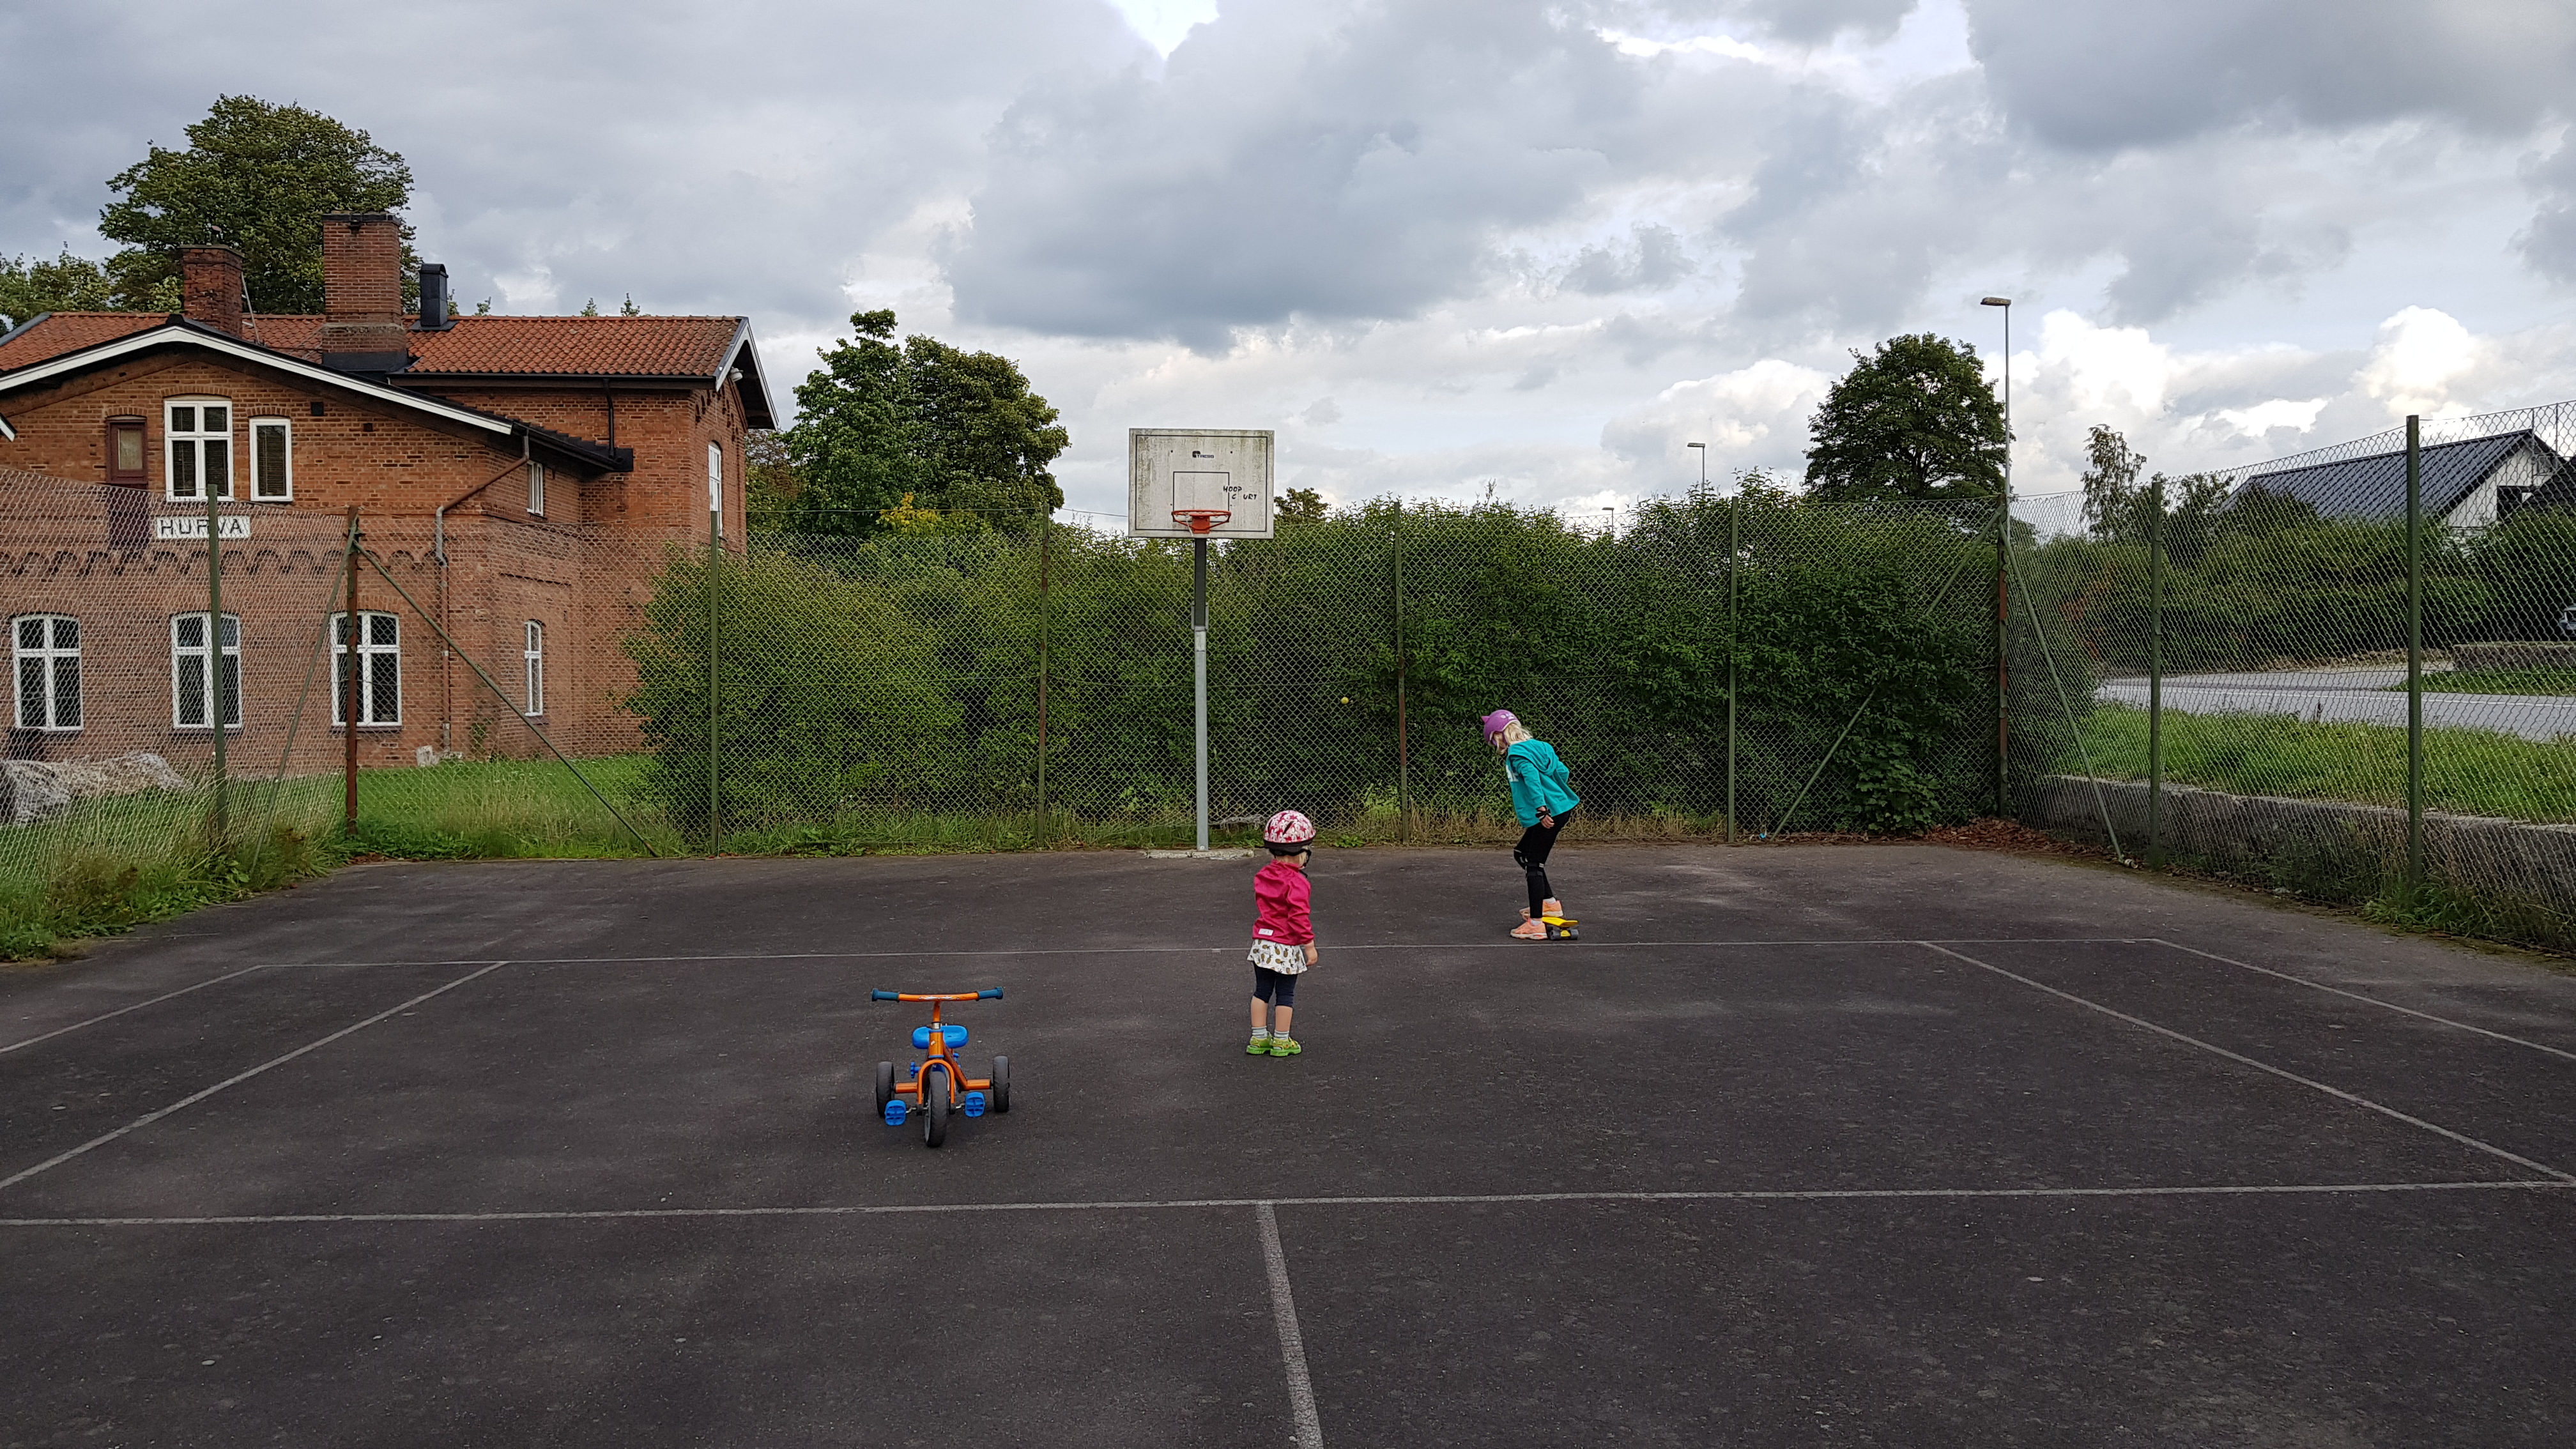 Utveckling av befintlig tennis/basketplan i Hurva till en aktivitetsyta